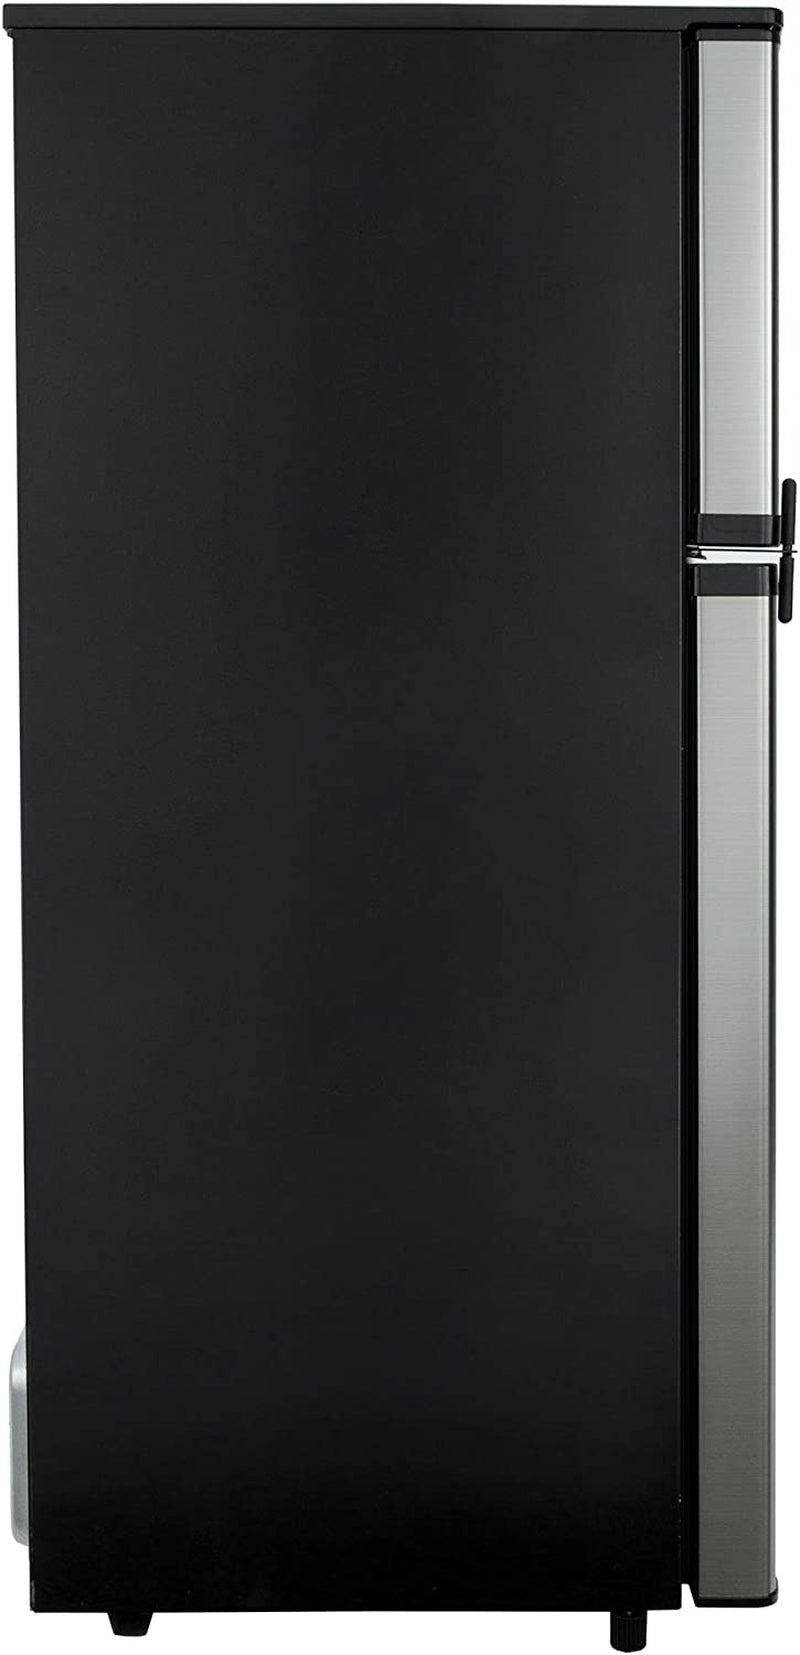 RV Refrigerator 1.7 Cubic Feet 12V Black - RecPro